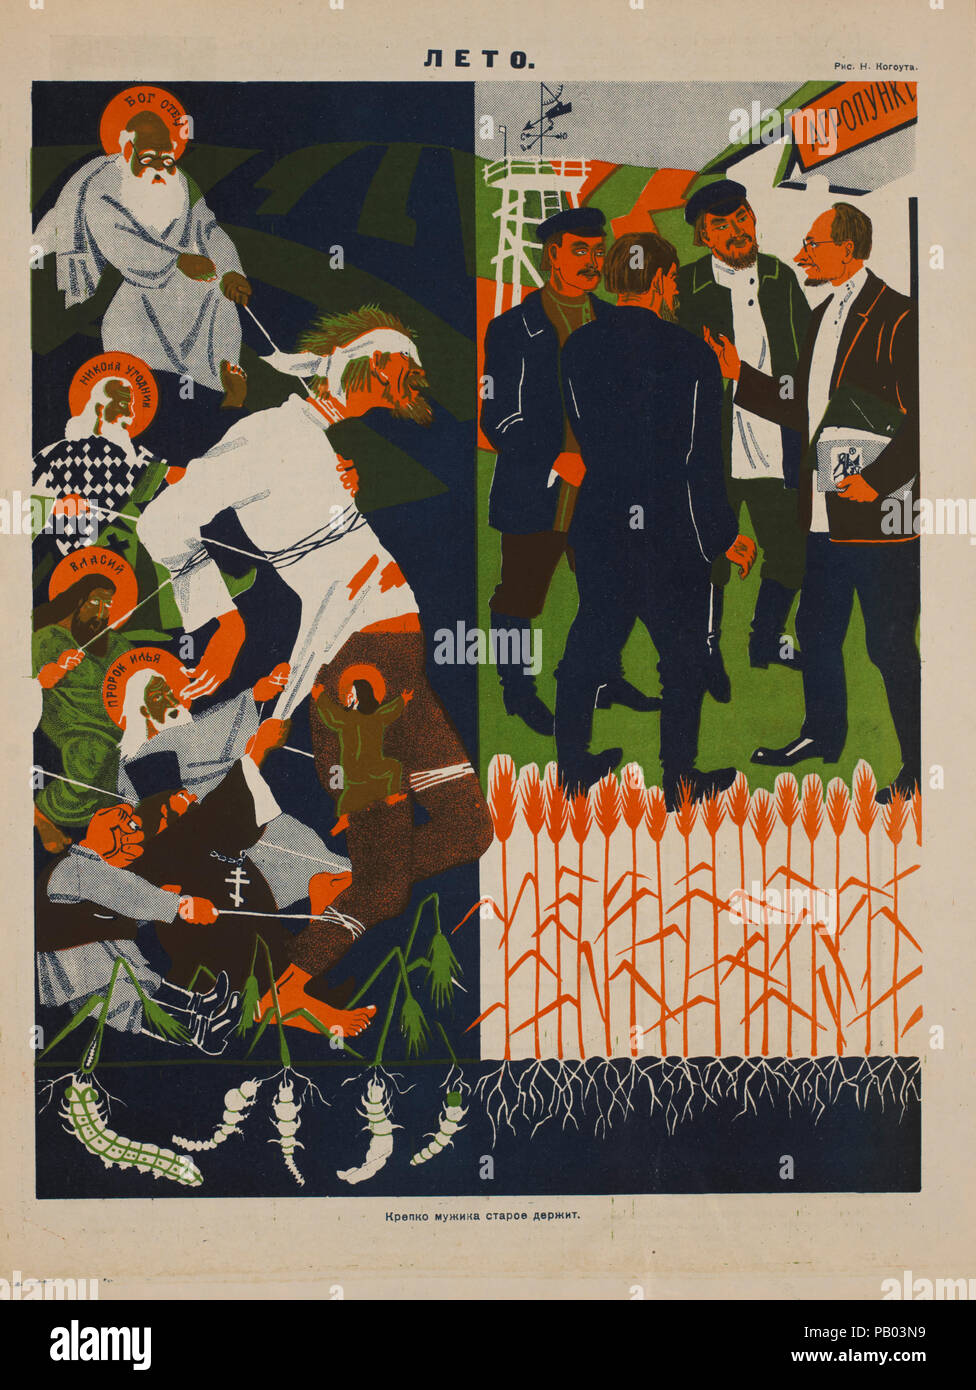 La propaganda soviética Revista Interior, Bezbozhnik u Stanka (ateo en su estrado) Magazine, Ilustración por Nikolai Kogout, 1920 Foto de stock